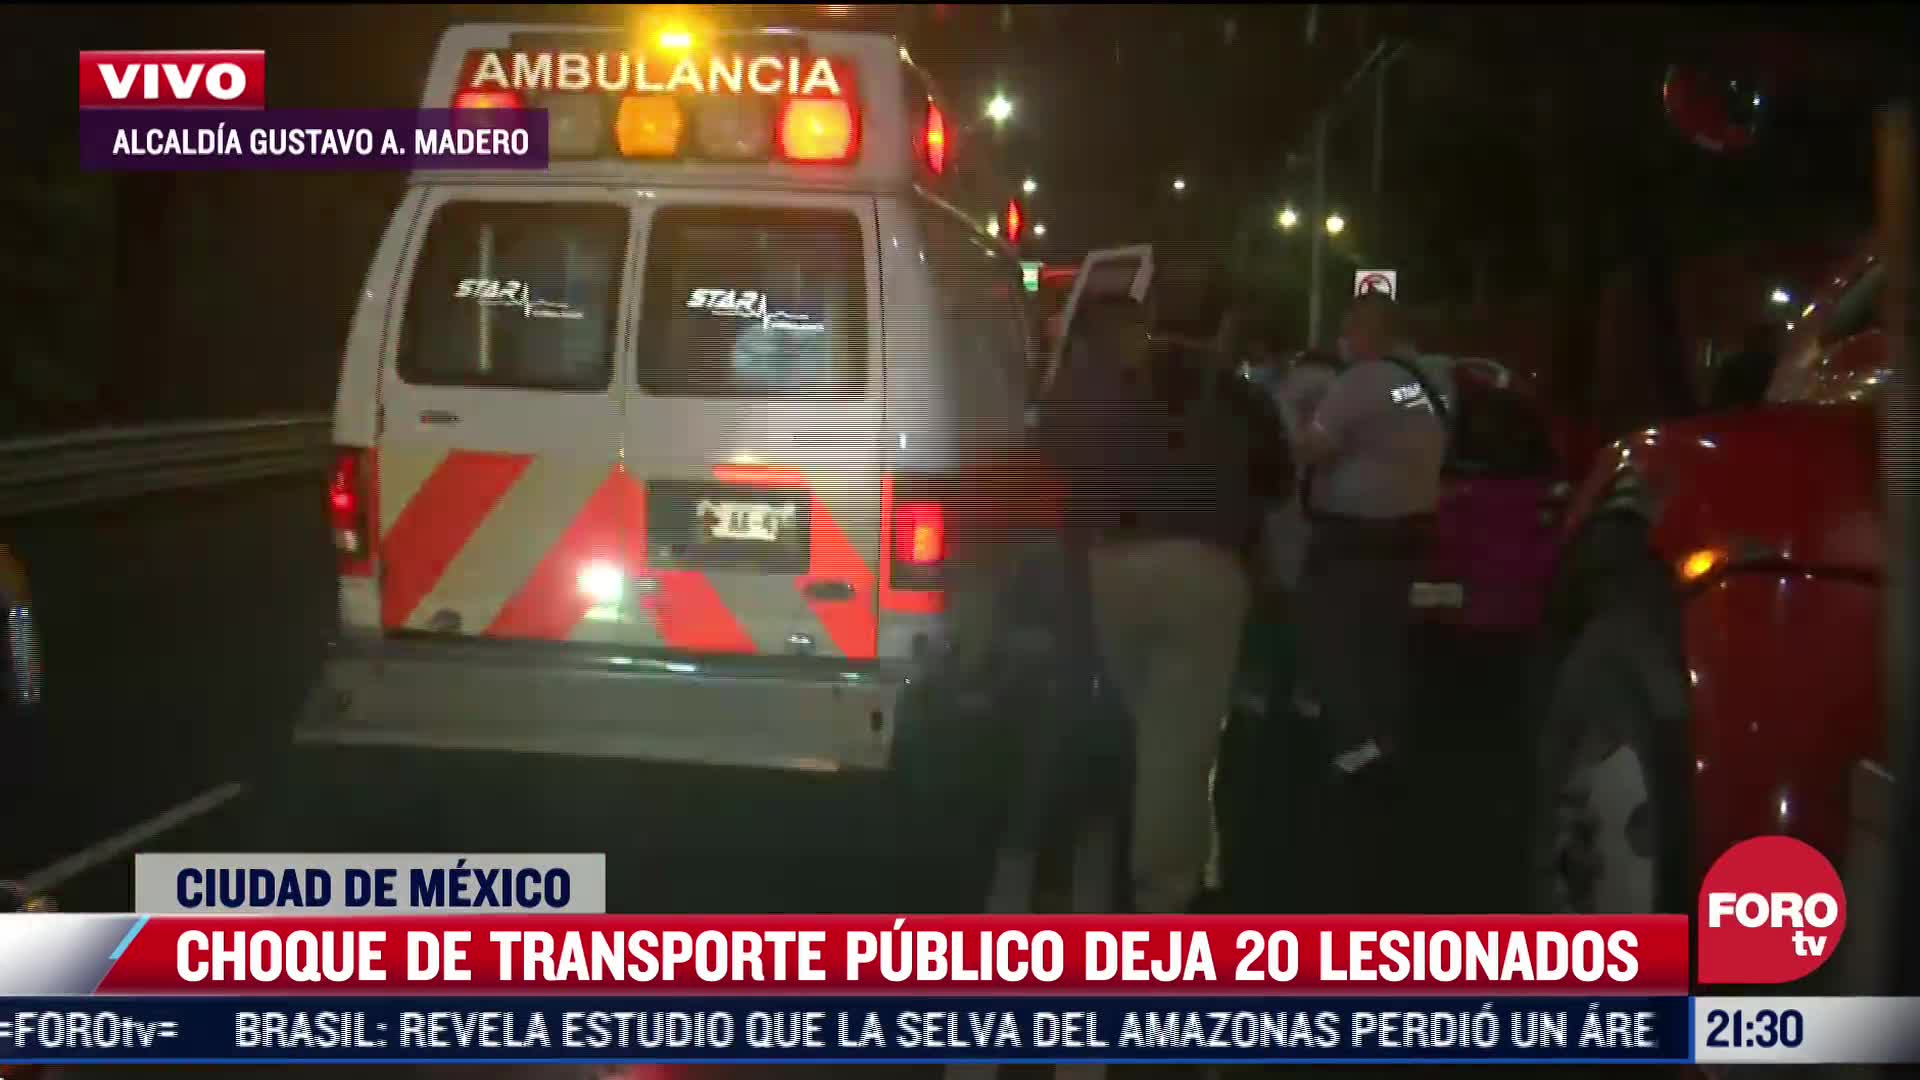 Choque de transporte público deja 20 lesionados en CDMX